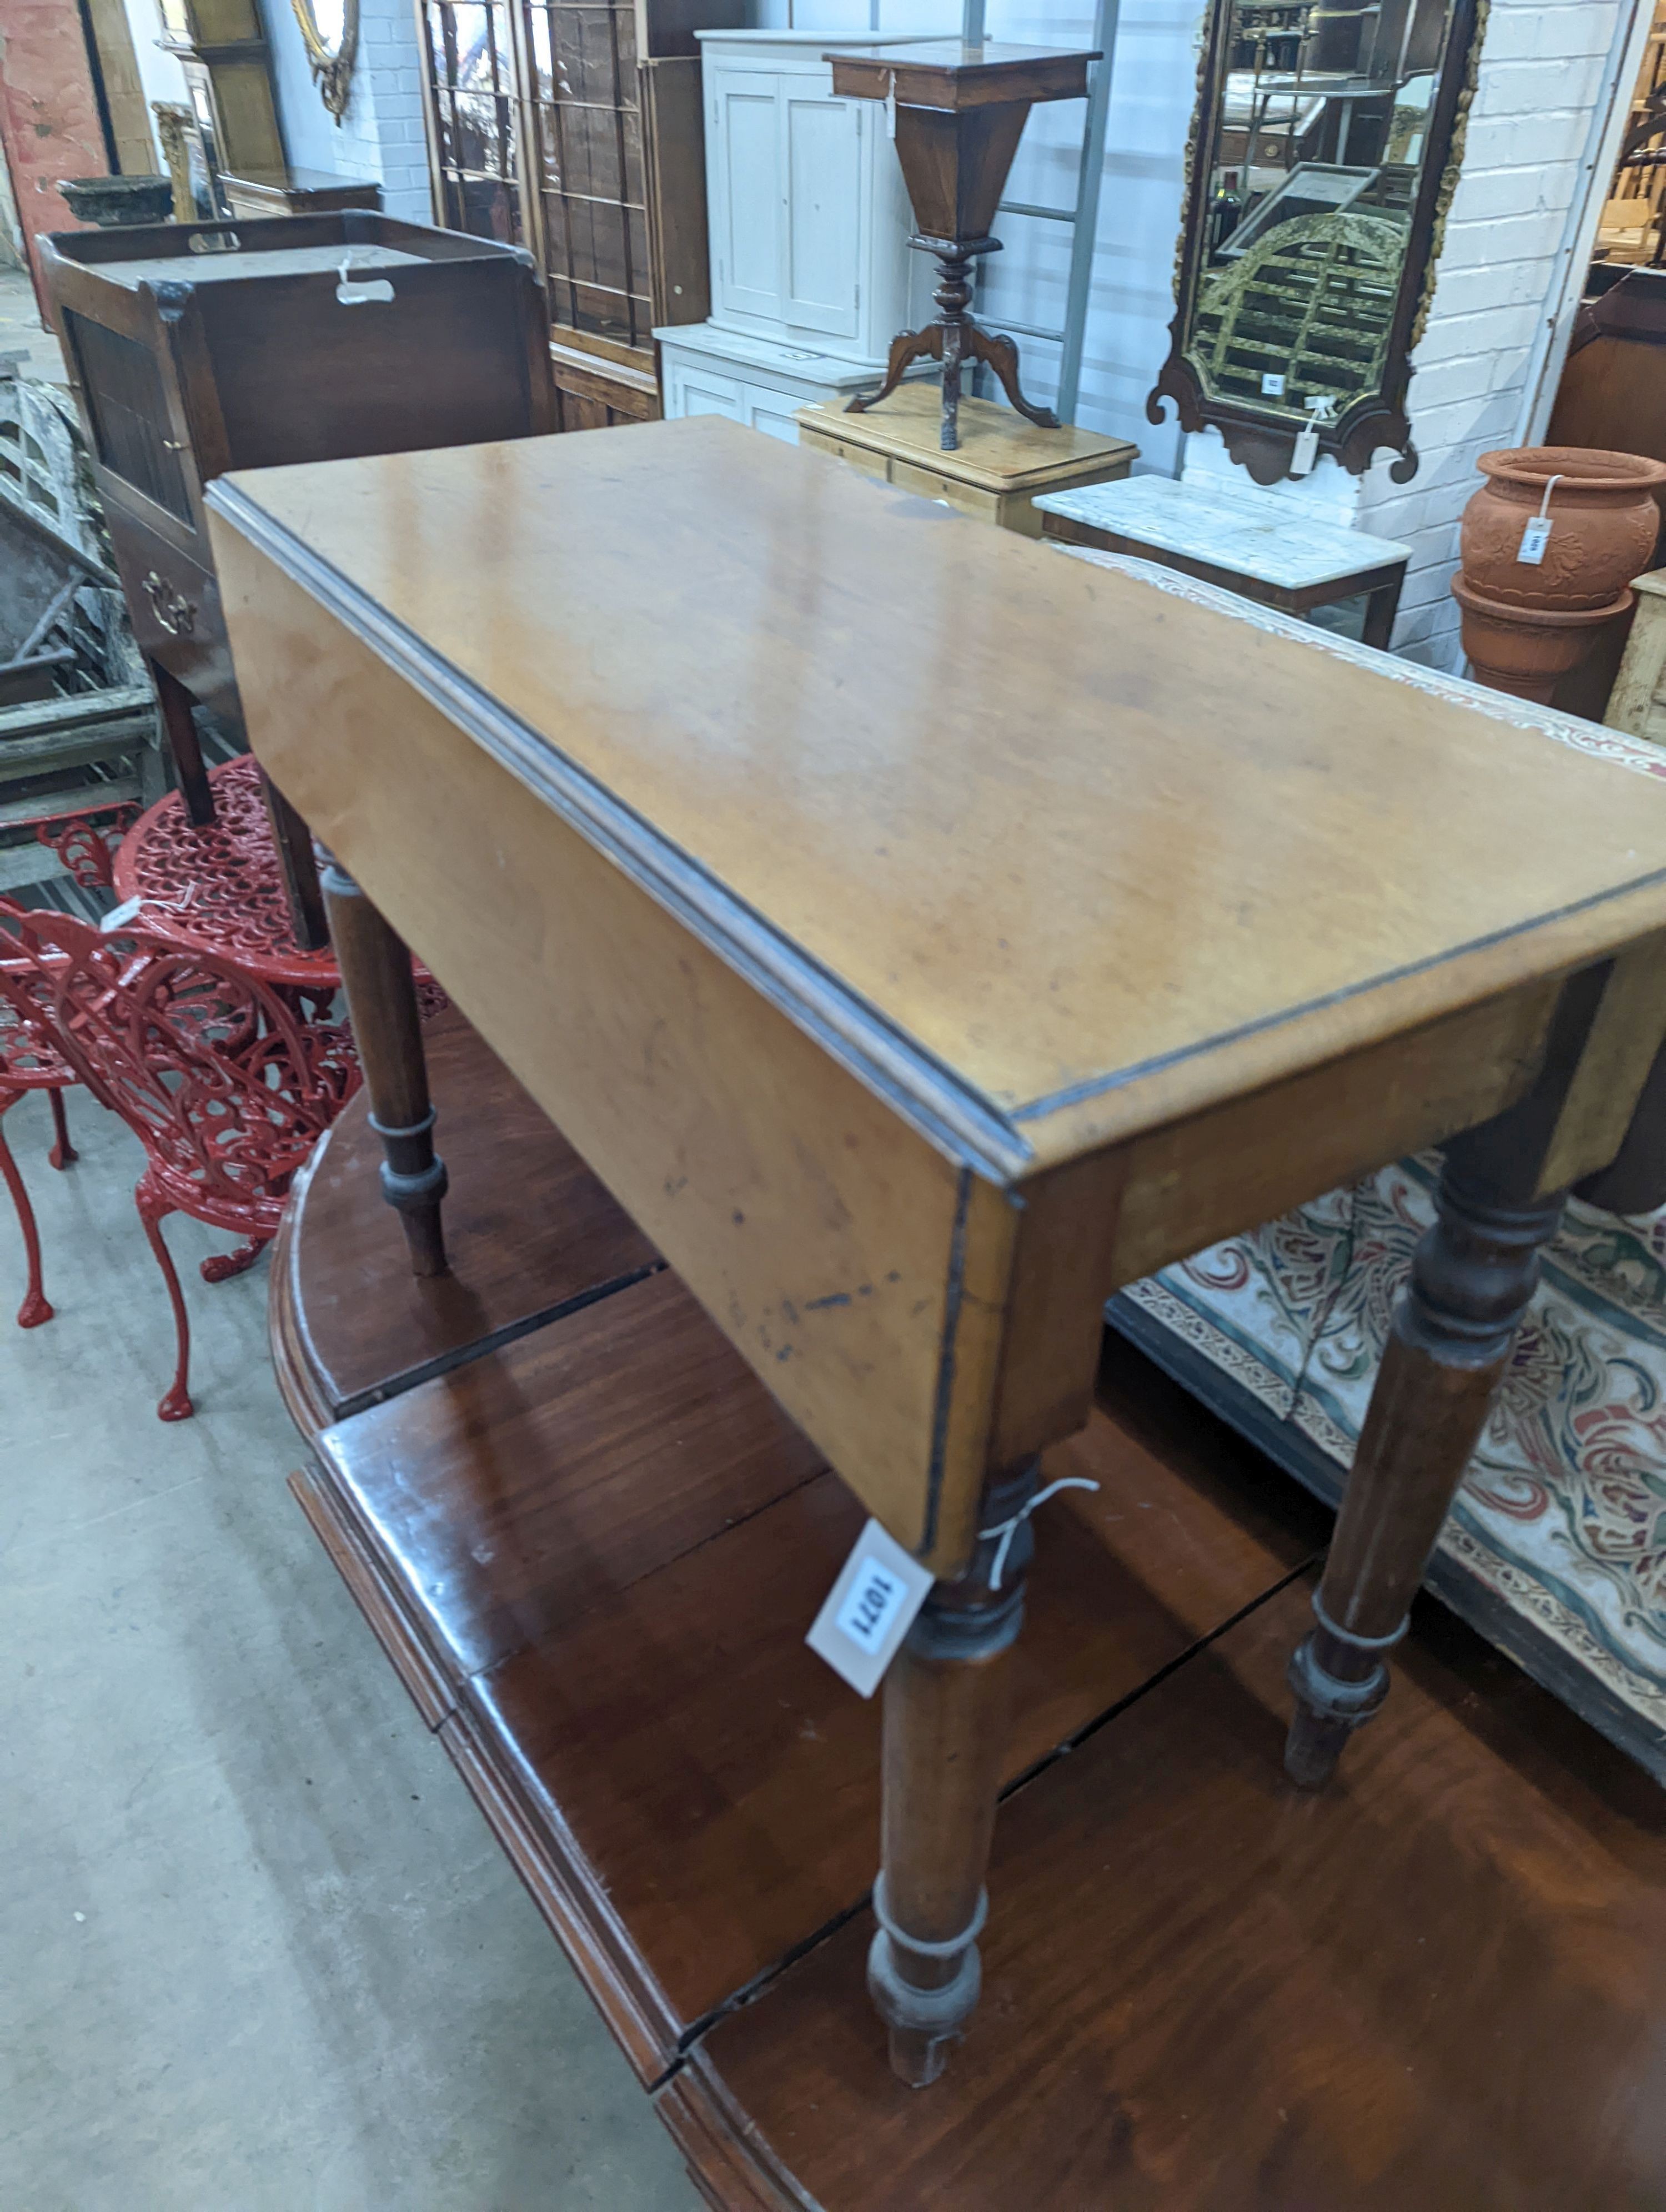 A Victorian Pembroke table, width 90cm, depth 40cm, height 69cm